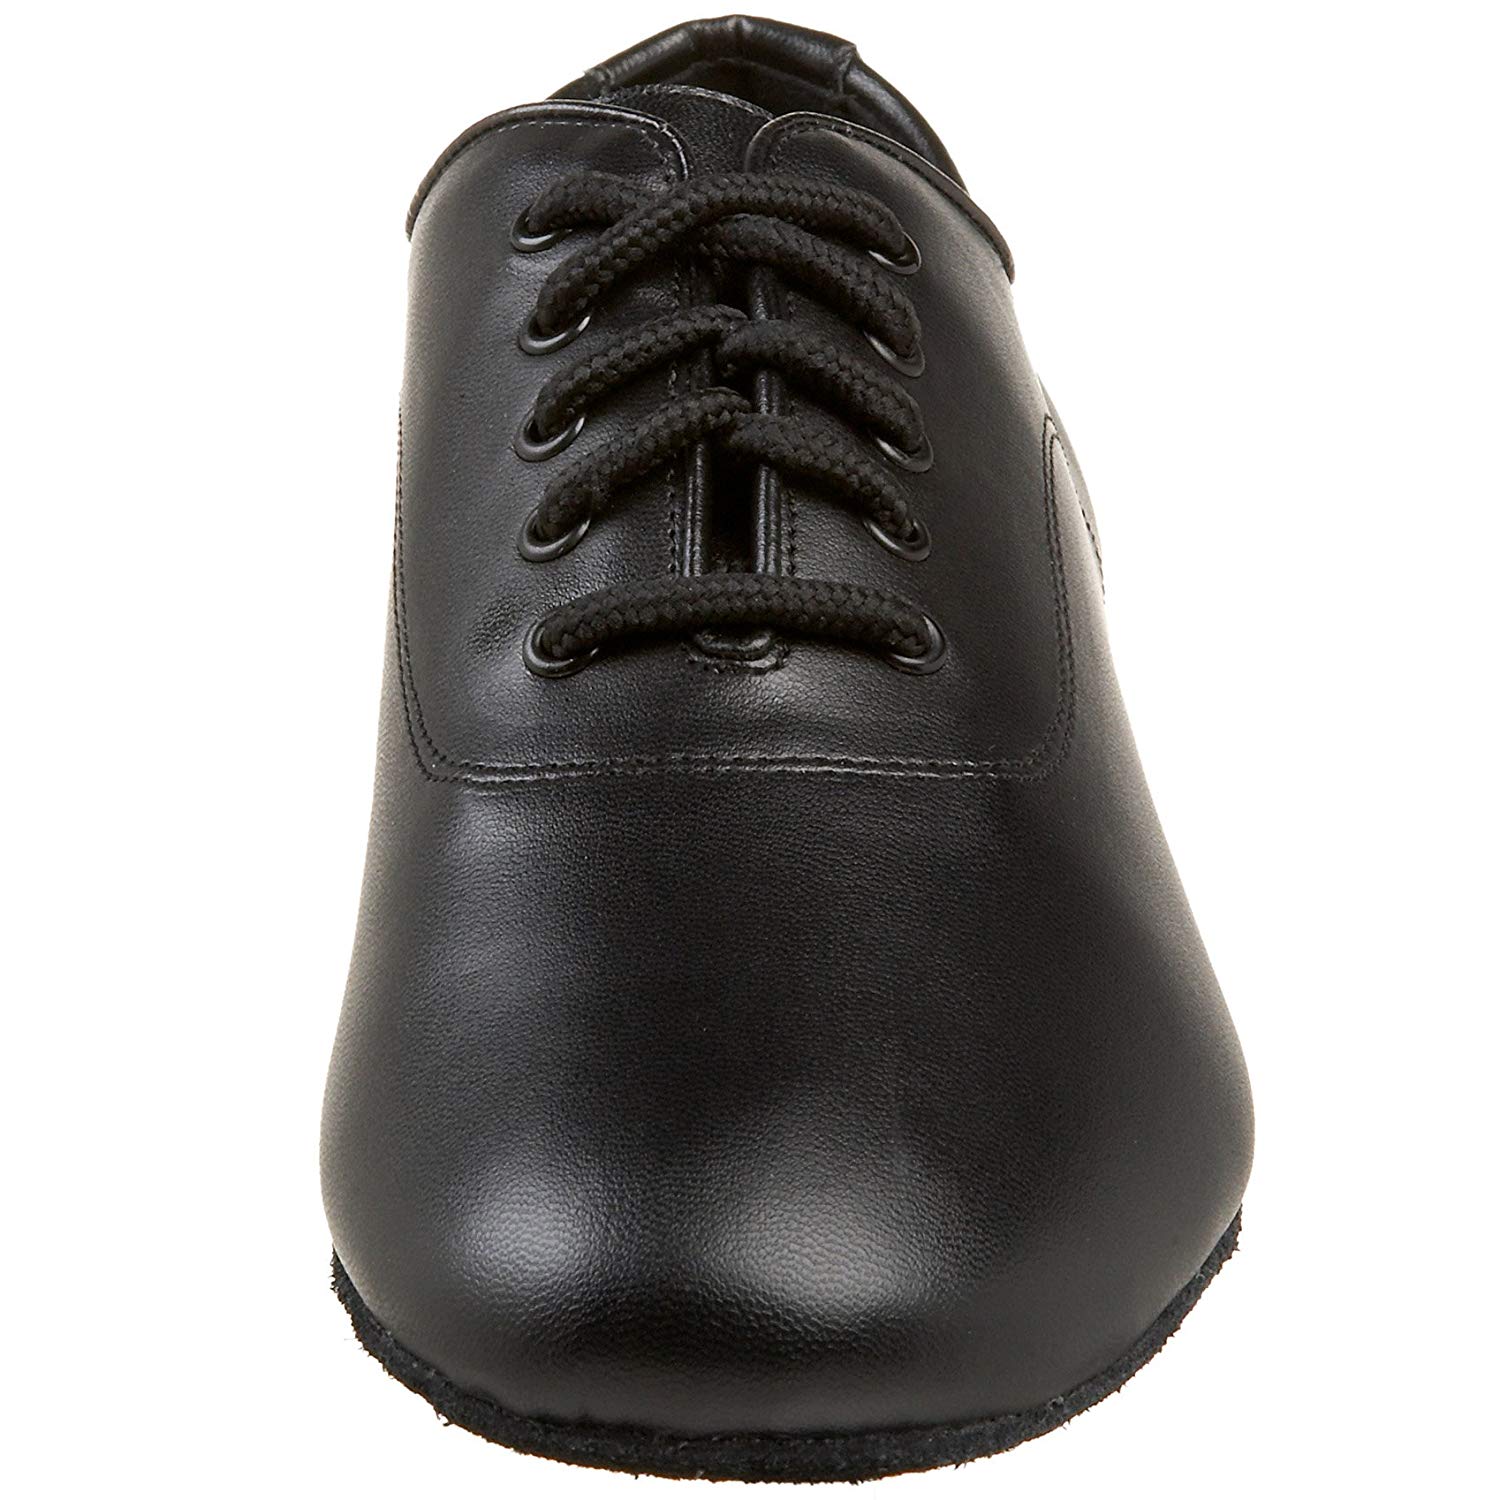 Capezio Men's Shoes Social Dance Leather Low Top Lace Up Dance, Black, Size 10.0 | eBay